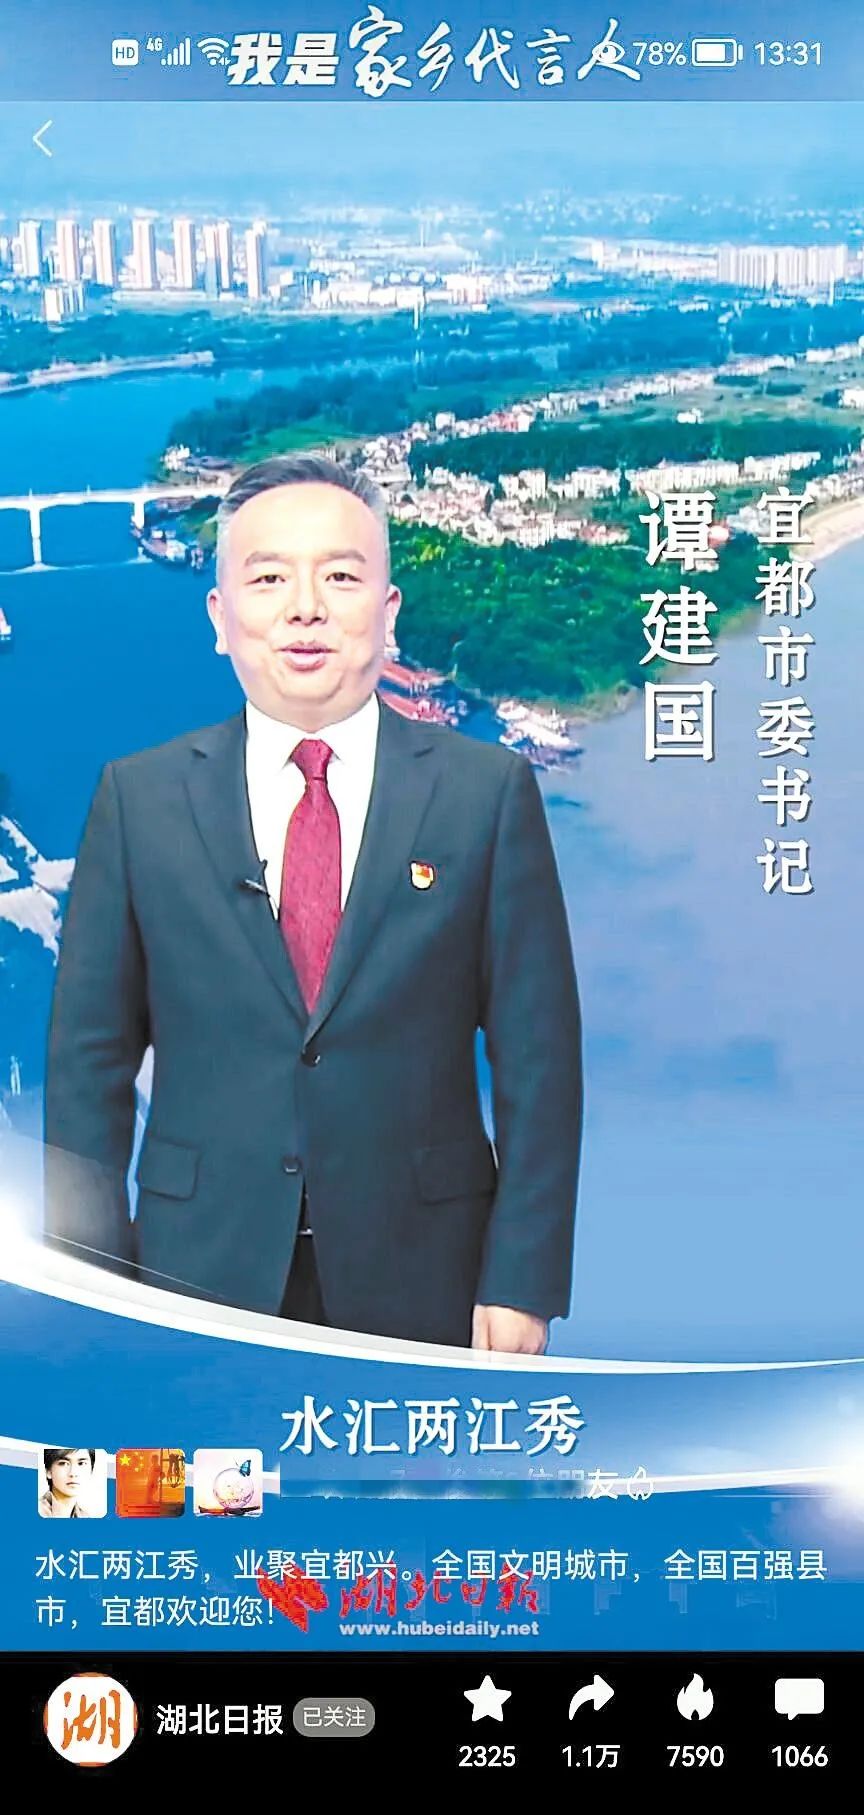 保康县委书记冯云波在前往武汉前夜,对着镜子练习普通话